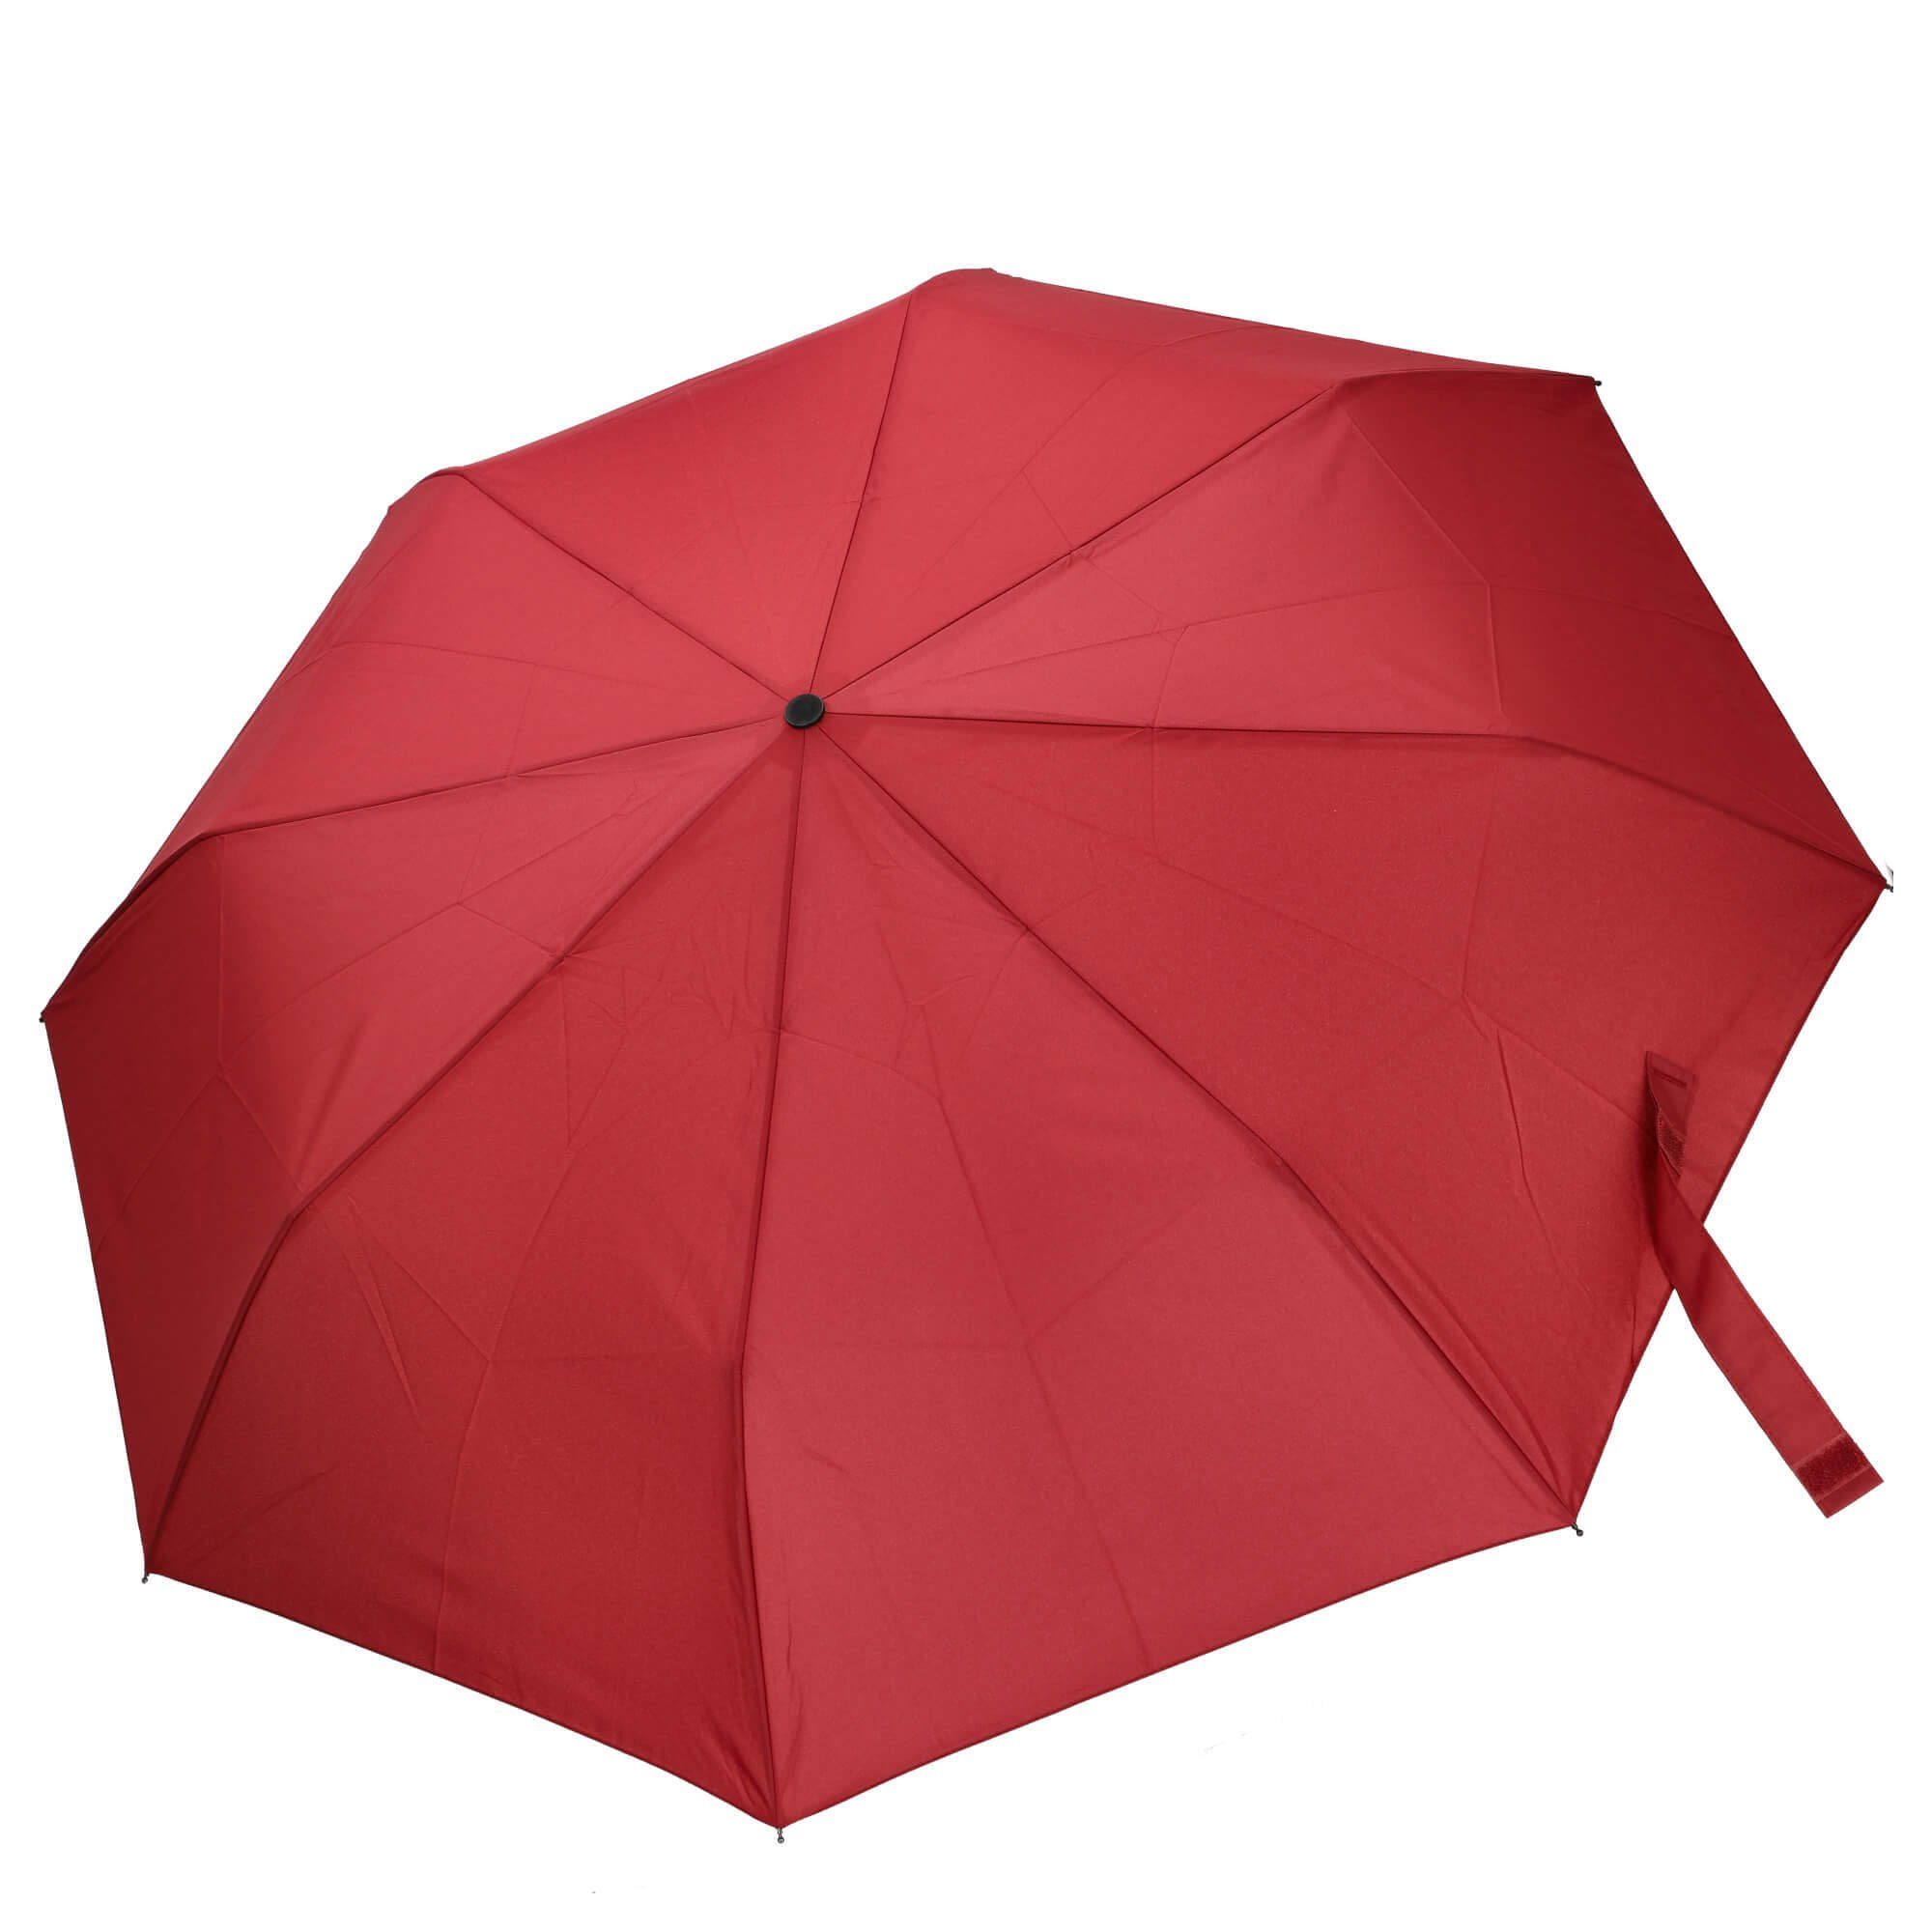 THE BRIDGE Taschenregenschirm Ombrelli - Regenschirm 91 cm rosso